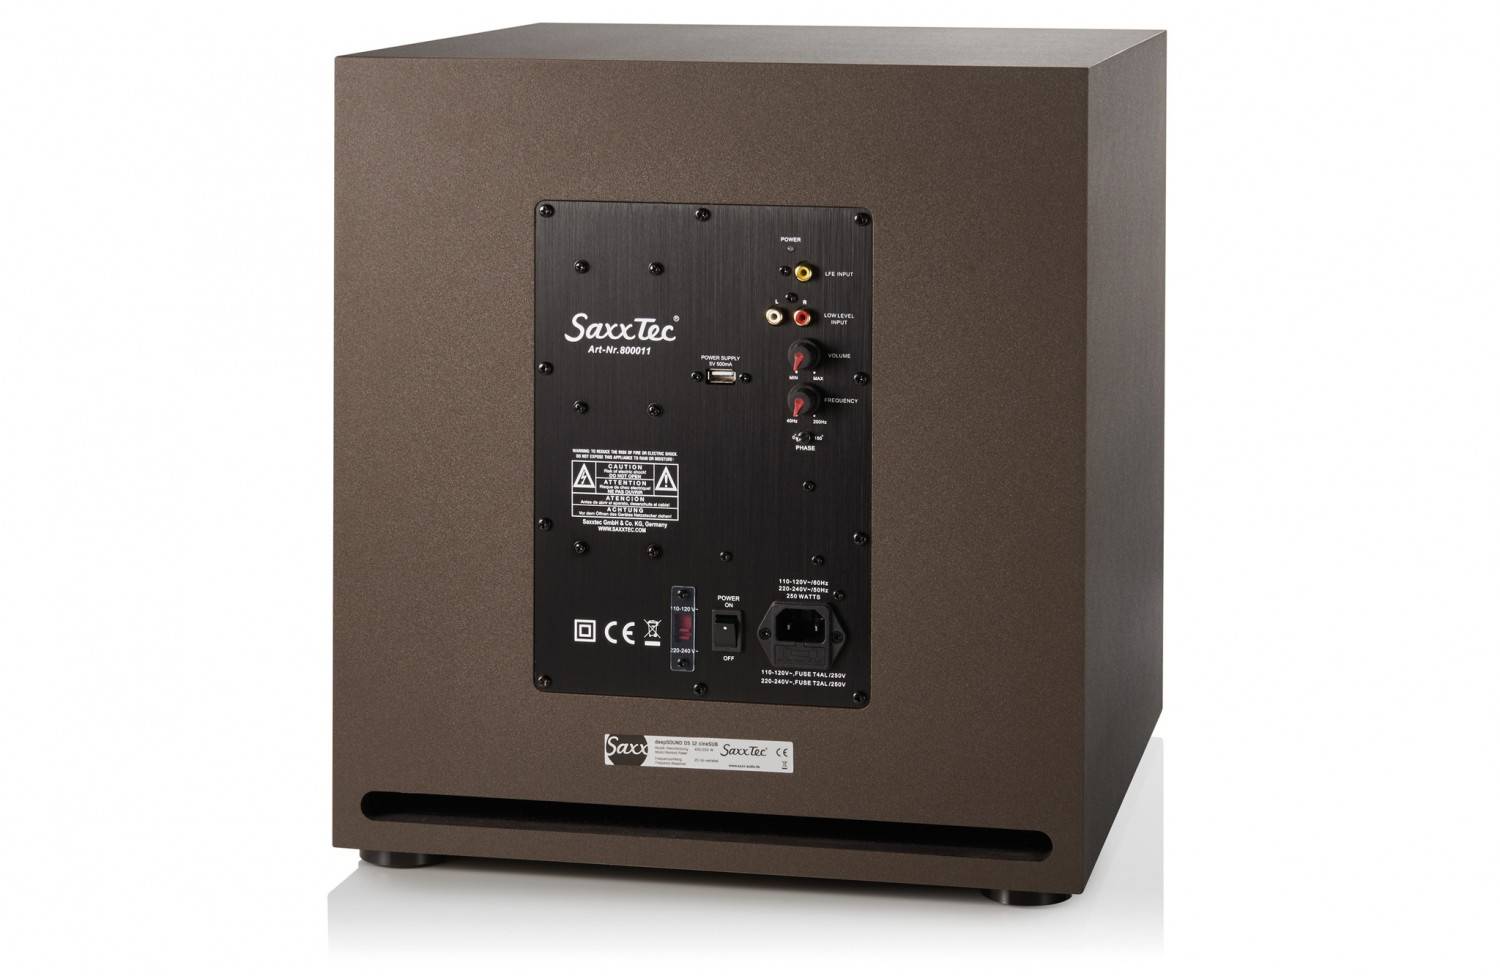 Lautsprecher Surround Saxx TS 900, Saxx TS 500 face, Saxx TS 300 im Test , Bild 6